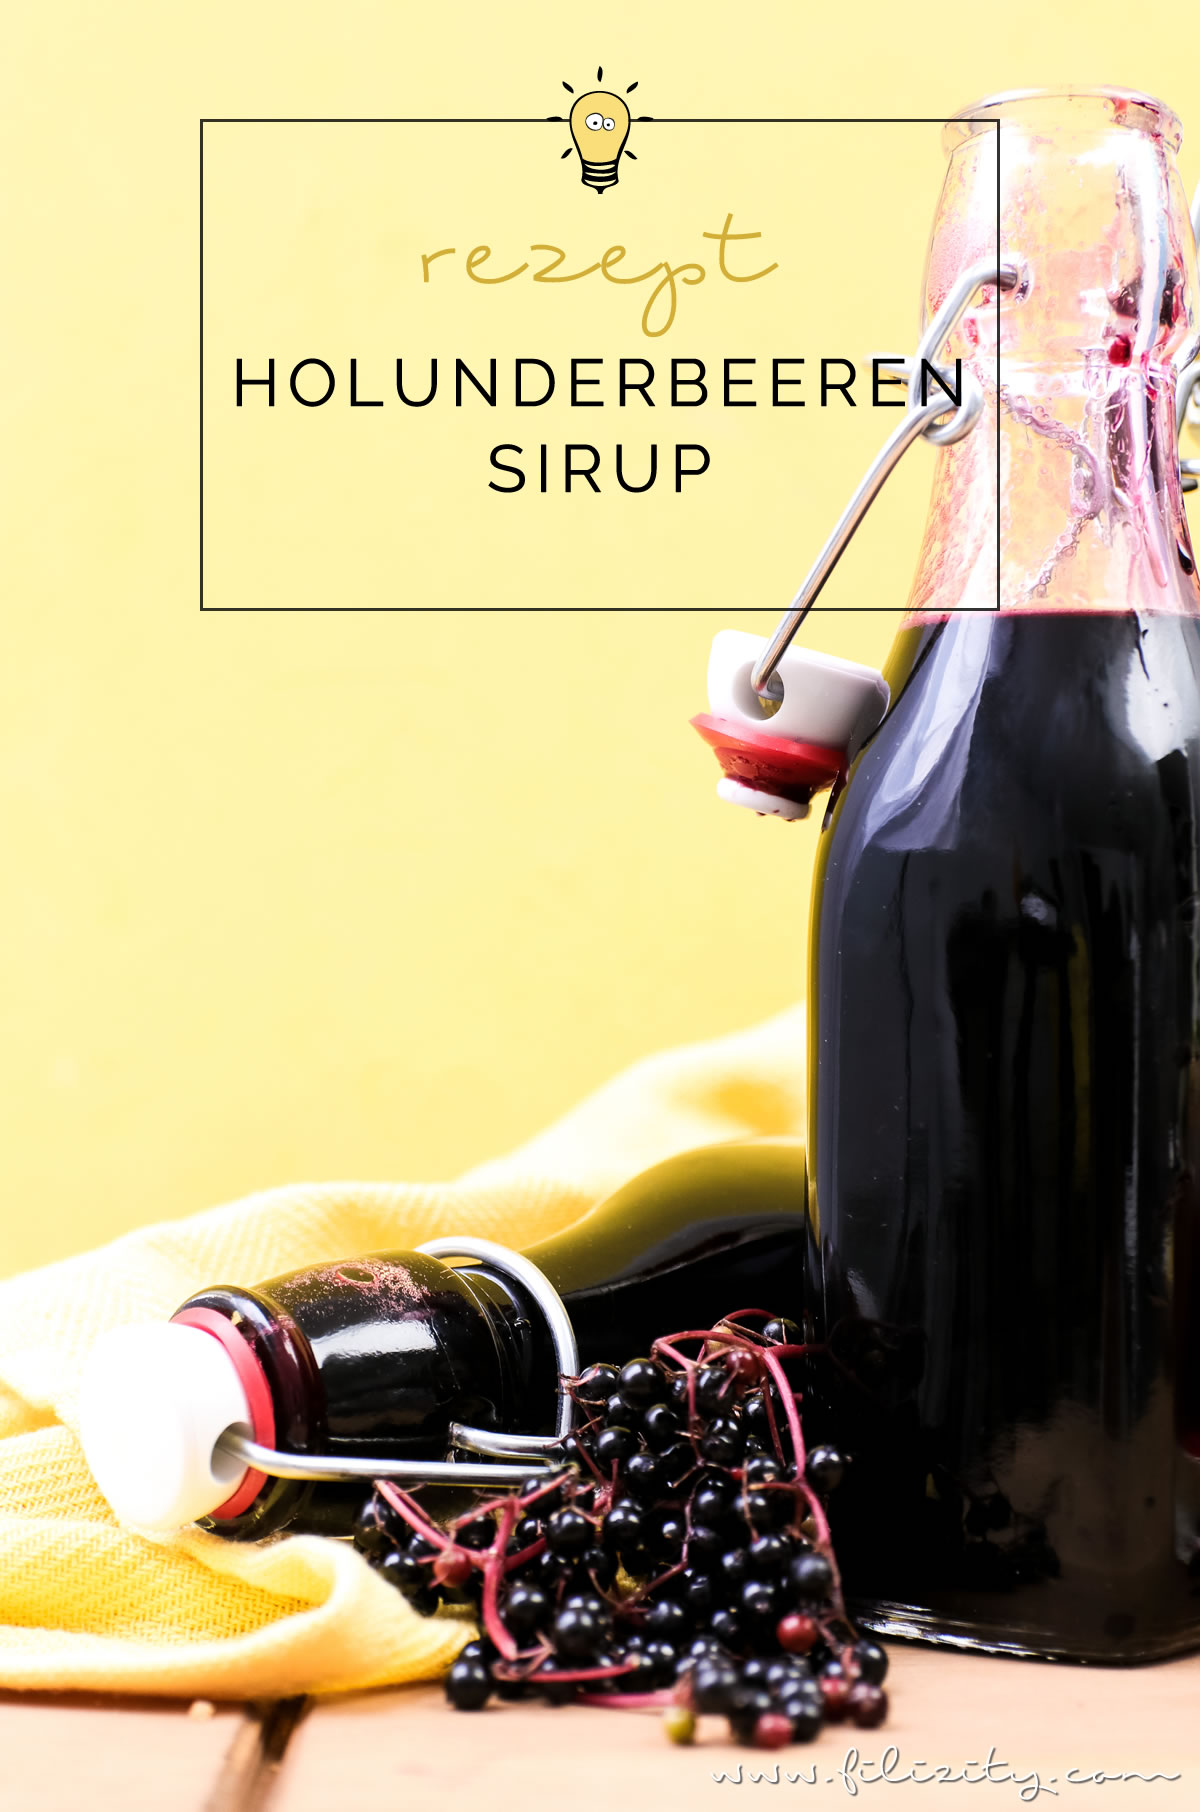 Holunderbeeren-Sirup / Fliederbeerensirup einkochen für Getränke & mehr - Mit diesem Rezept geht es ganz einfach! | Perfekt als Geschenk oder als Vorrat für den Winter! | Filizity.com | Food-Blog aus dem Rheinland #holunder #einkochen